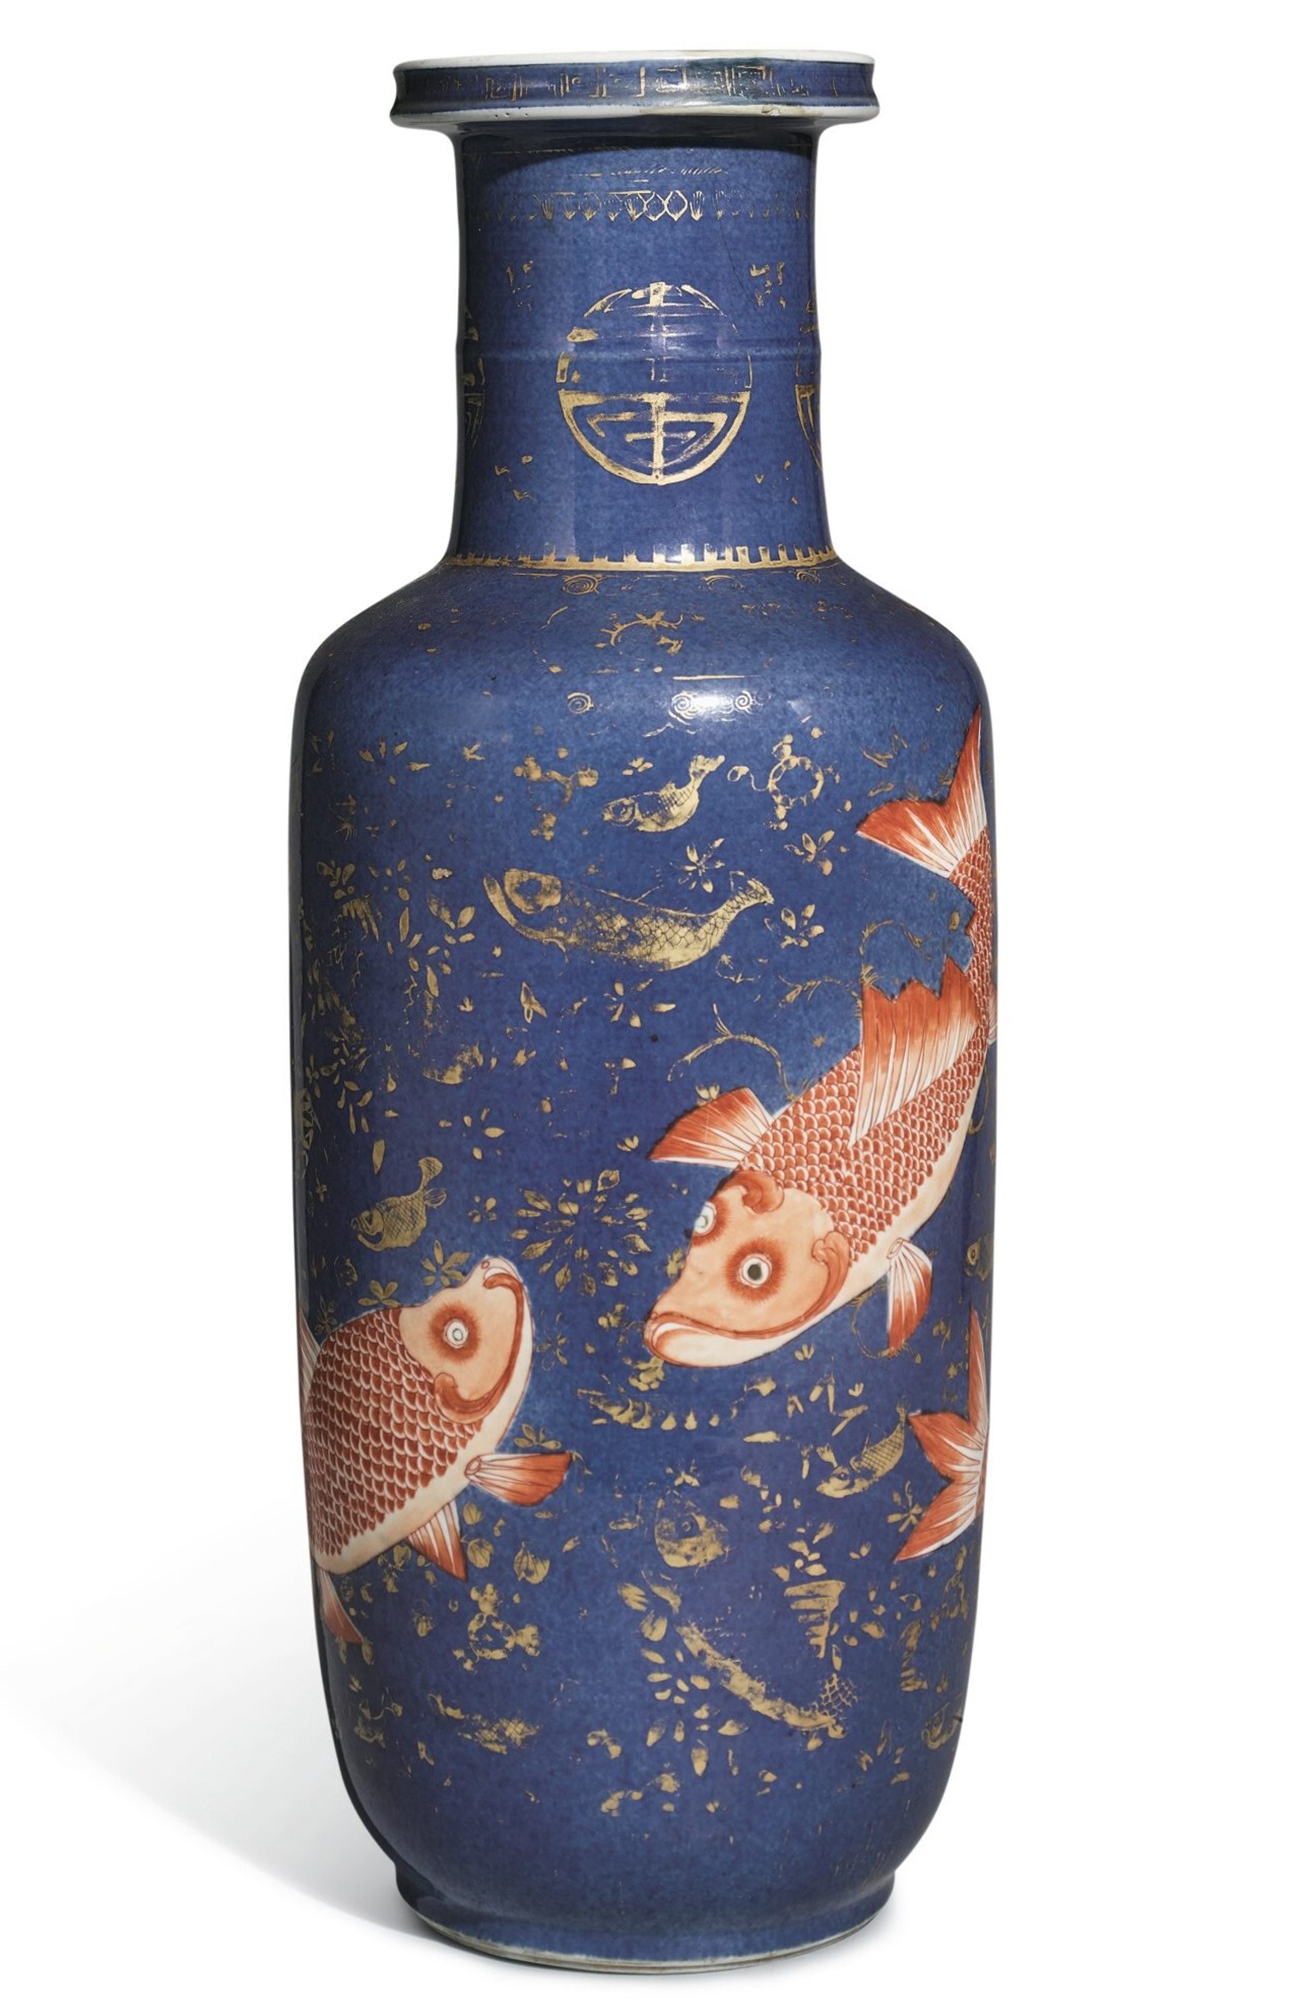 清康熙 灑藍地描金礬紅彩魚藻紋棒槌瓶